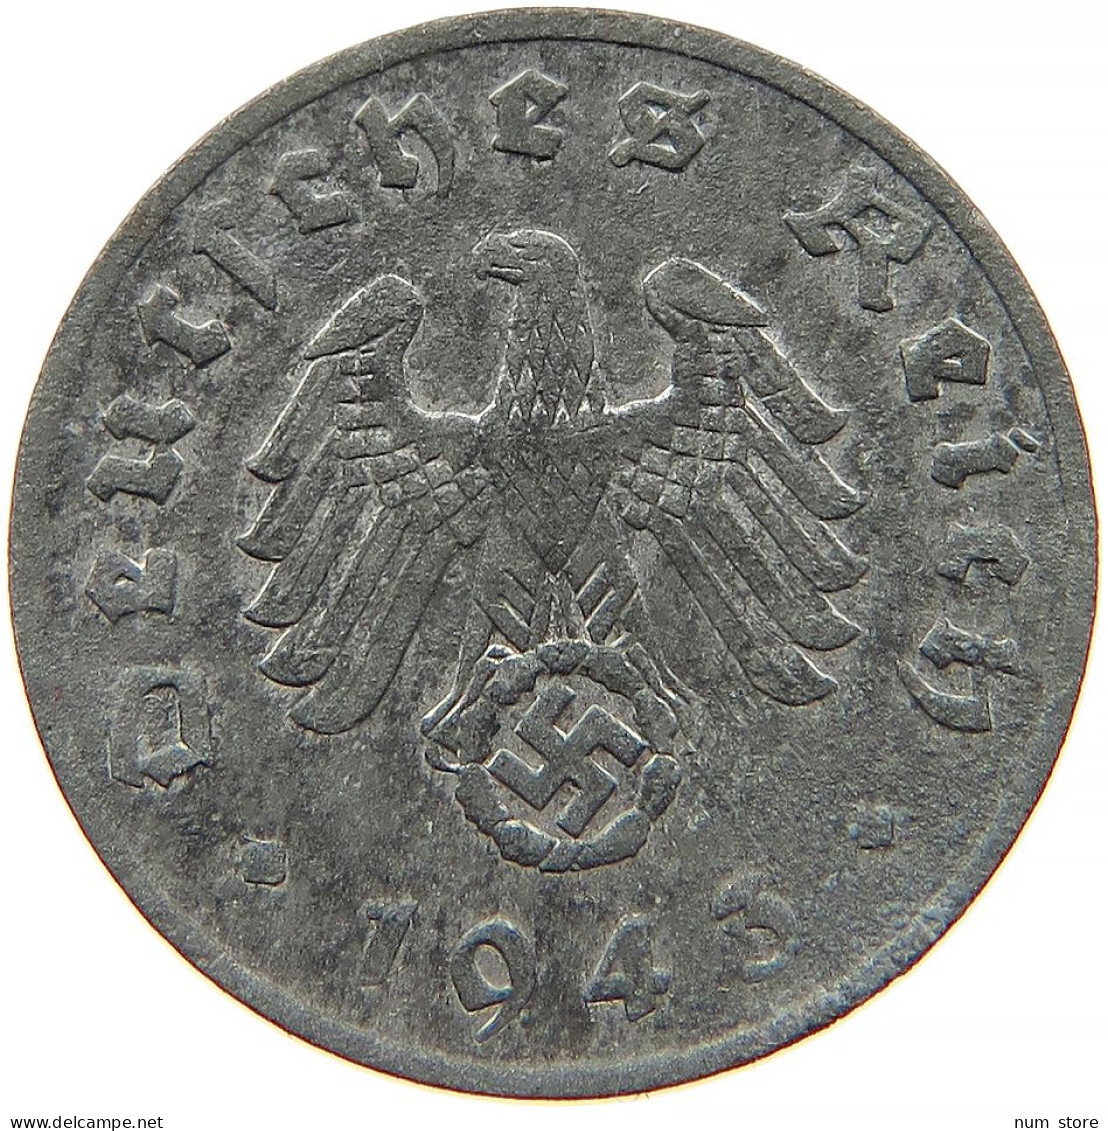 GERMANY 1 REICHSPFENNIG 1943 F #s091 1031 - 1 Reichspfennig